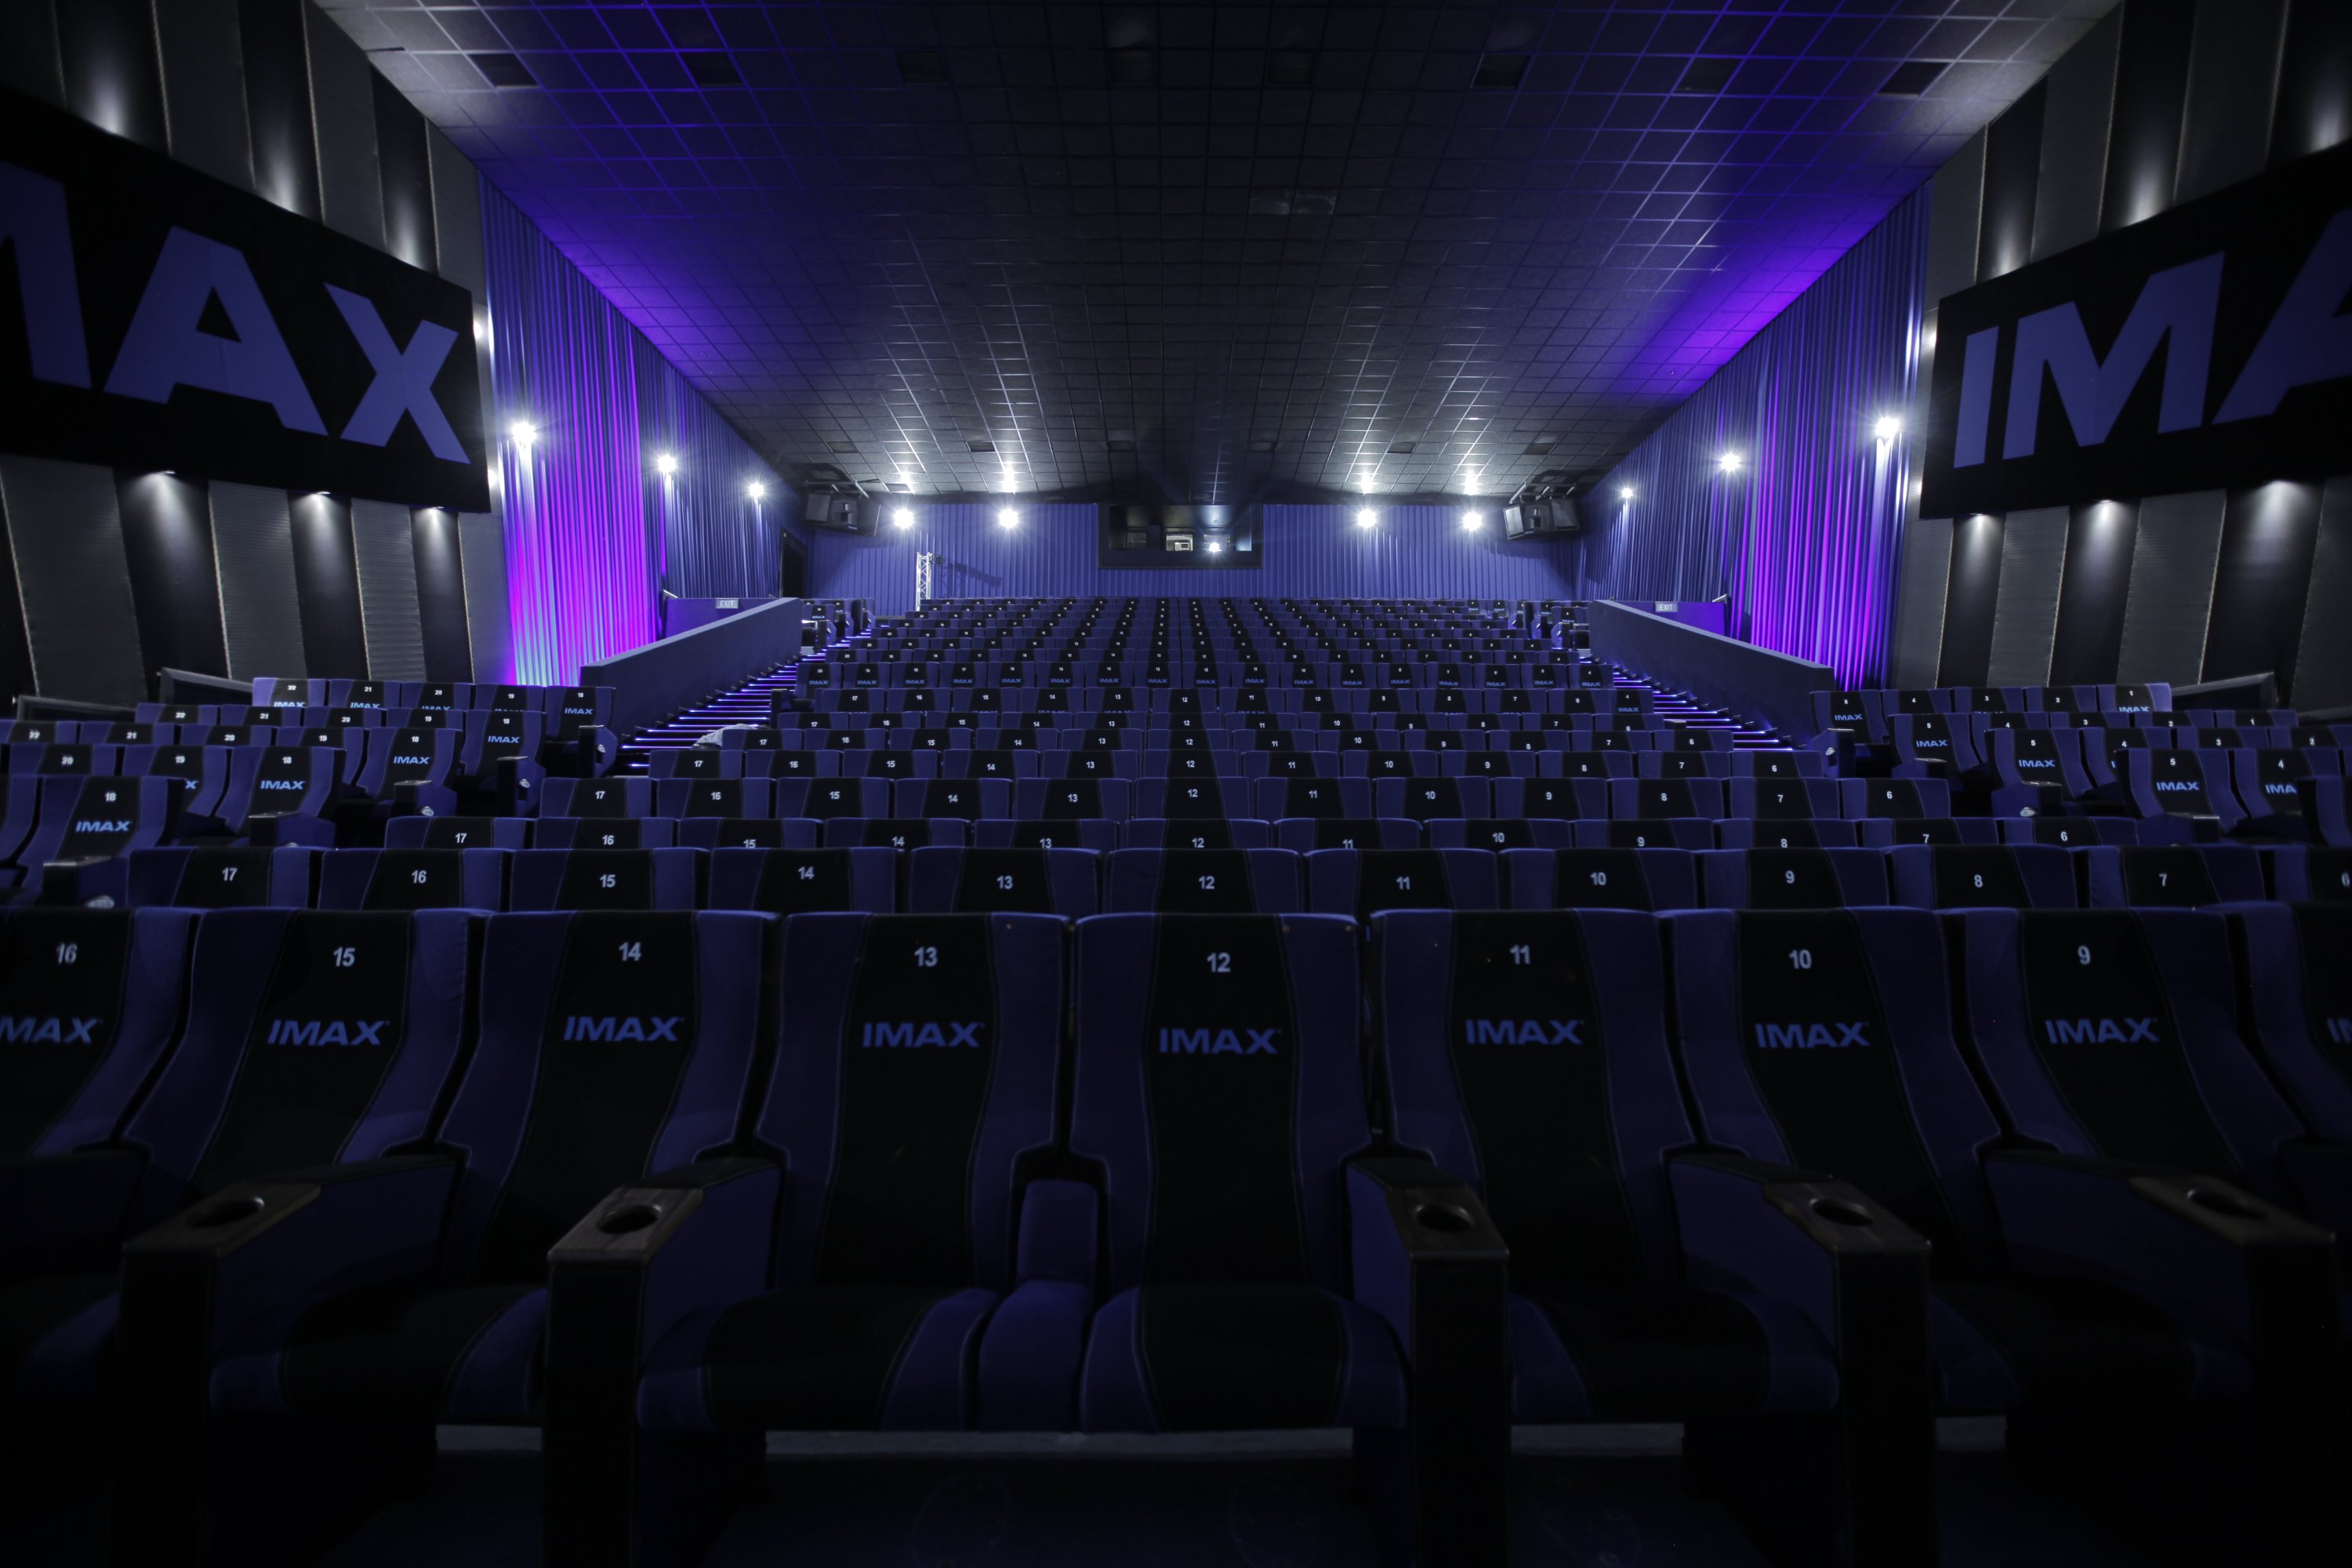 Кинотеатр с самым большим экраном. IMAX Капитолий Химки. Nescafe IMAX кинотеатр. Зал IMAX Капитолий. Кинотеатр в Химках аймакс.